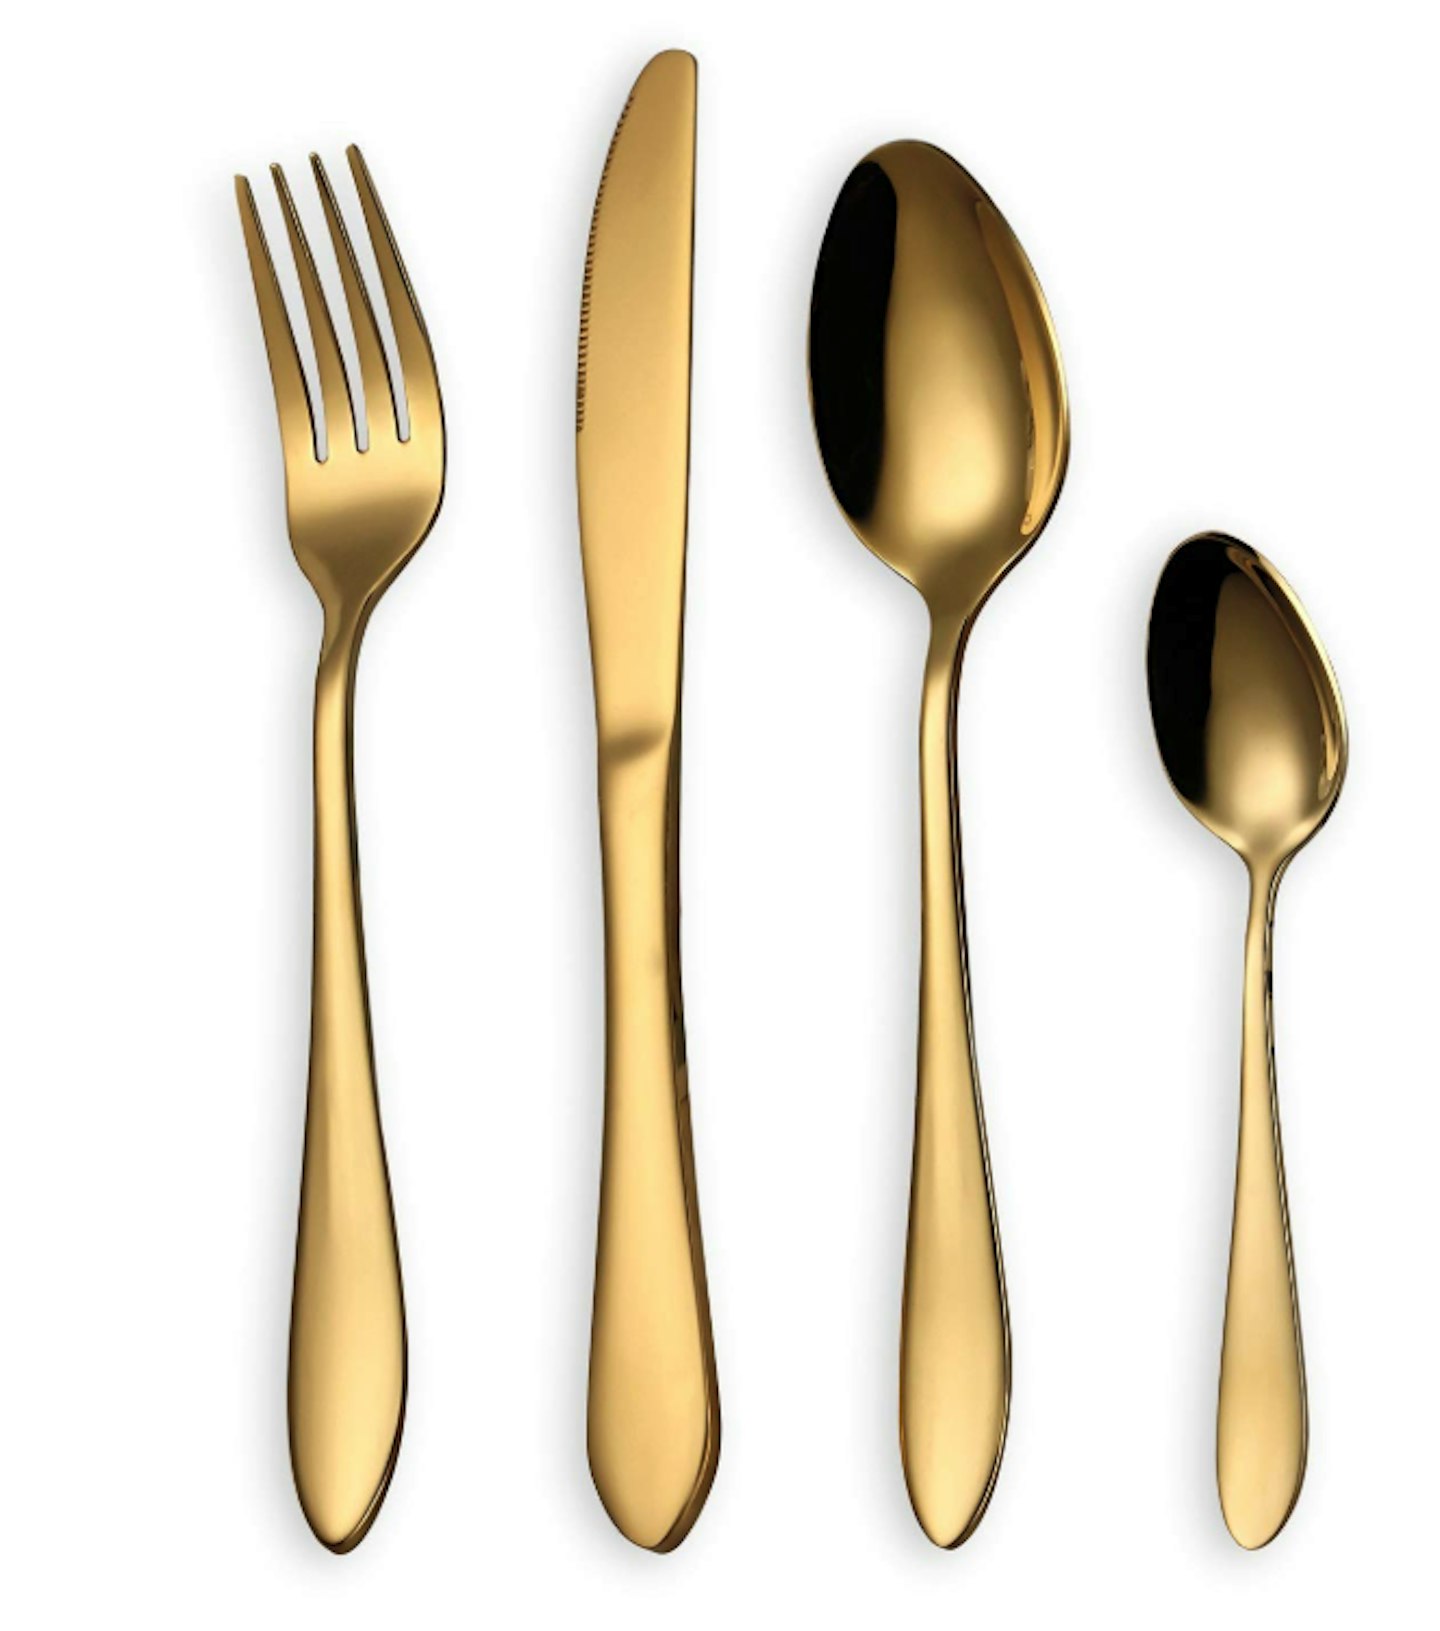 HOMQUEN 24-Piece Dining Gold Cutlery Set, £22.99